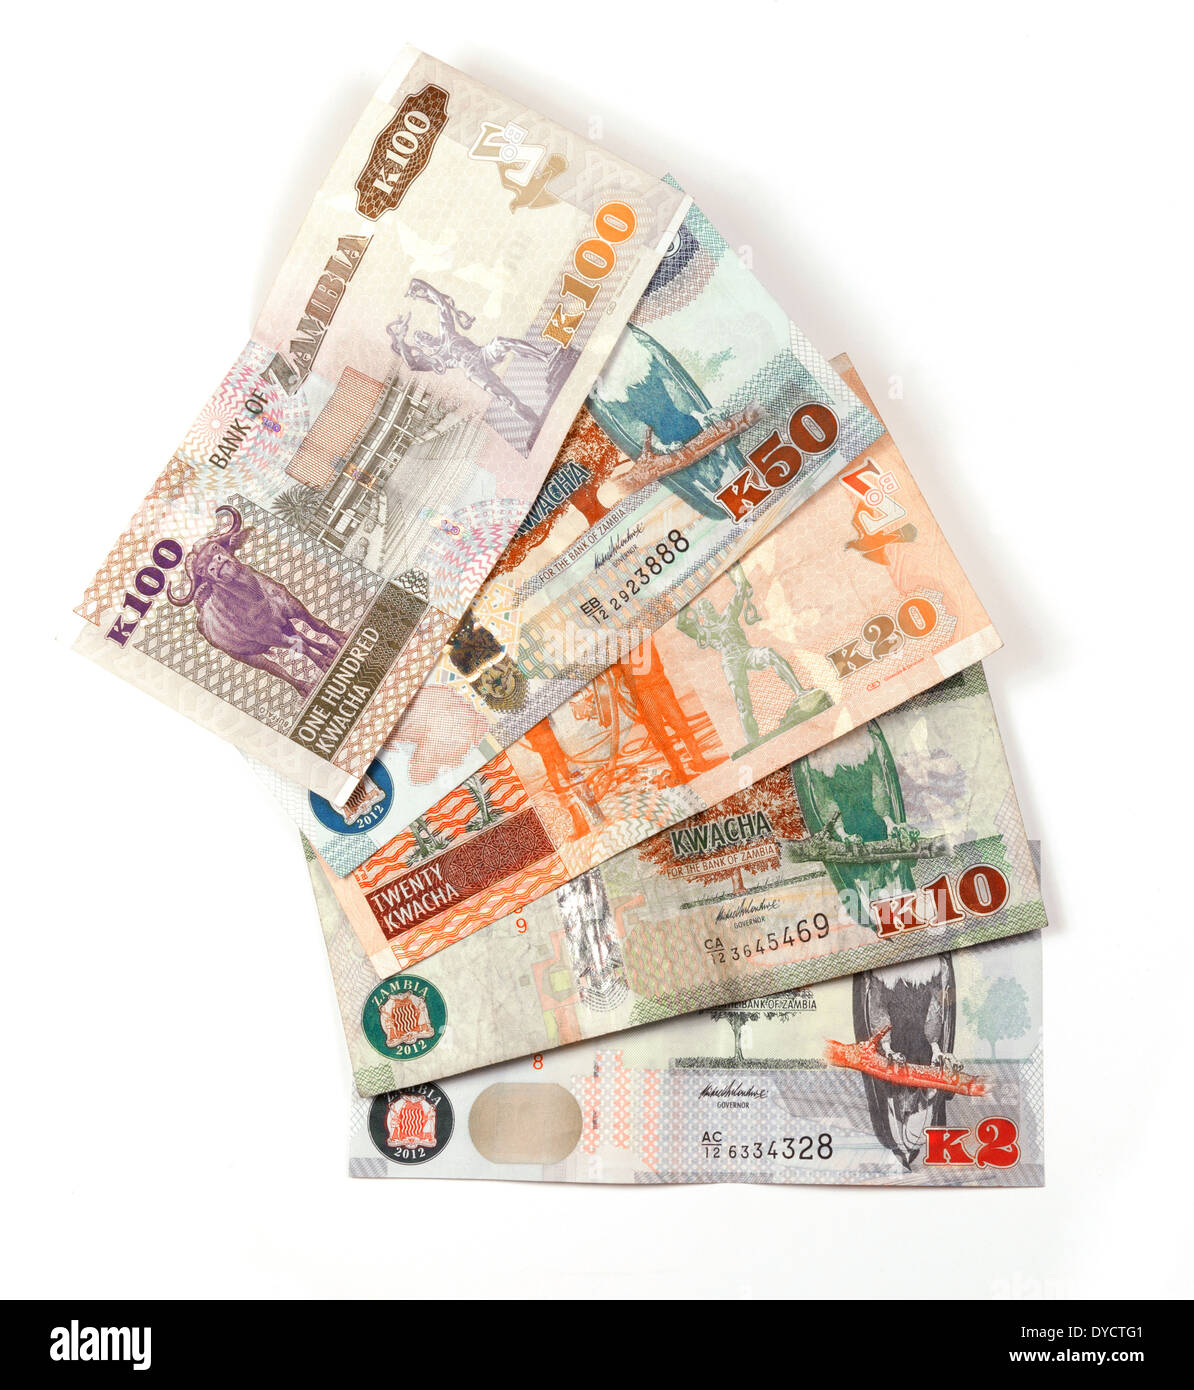 La valuta dello Zambia - Zambia Kwacha note di denaro per i viaggi in Zambia, Africa Foto Stock